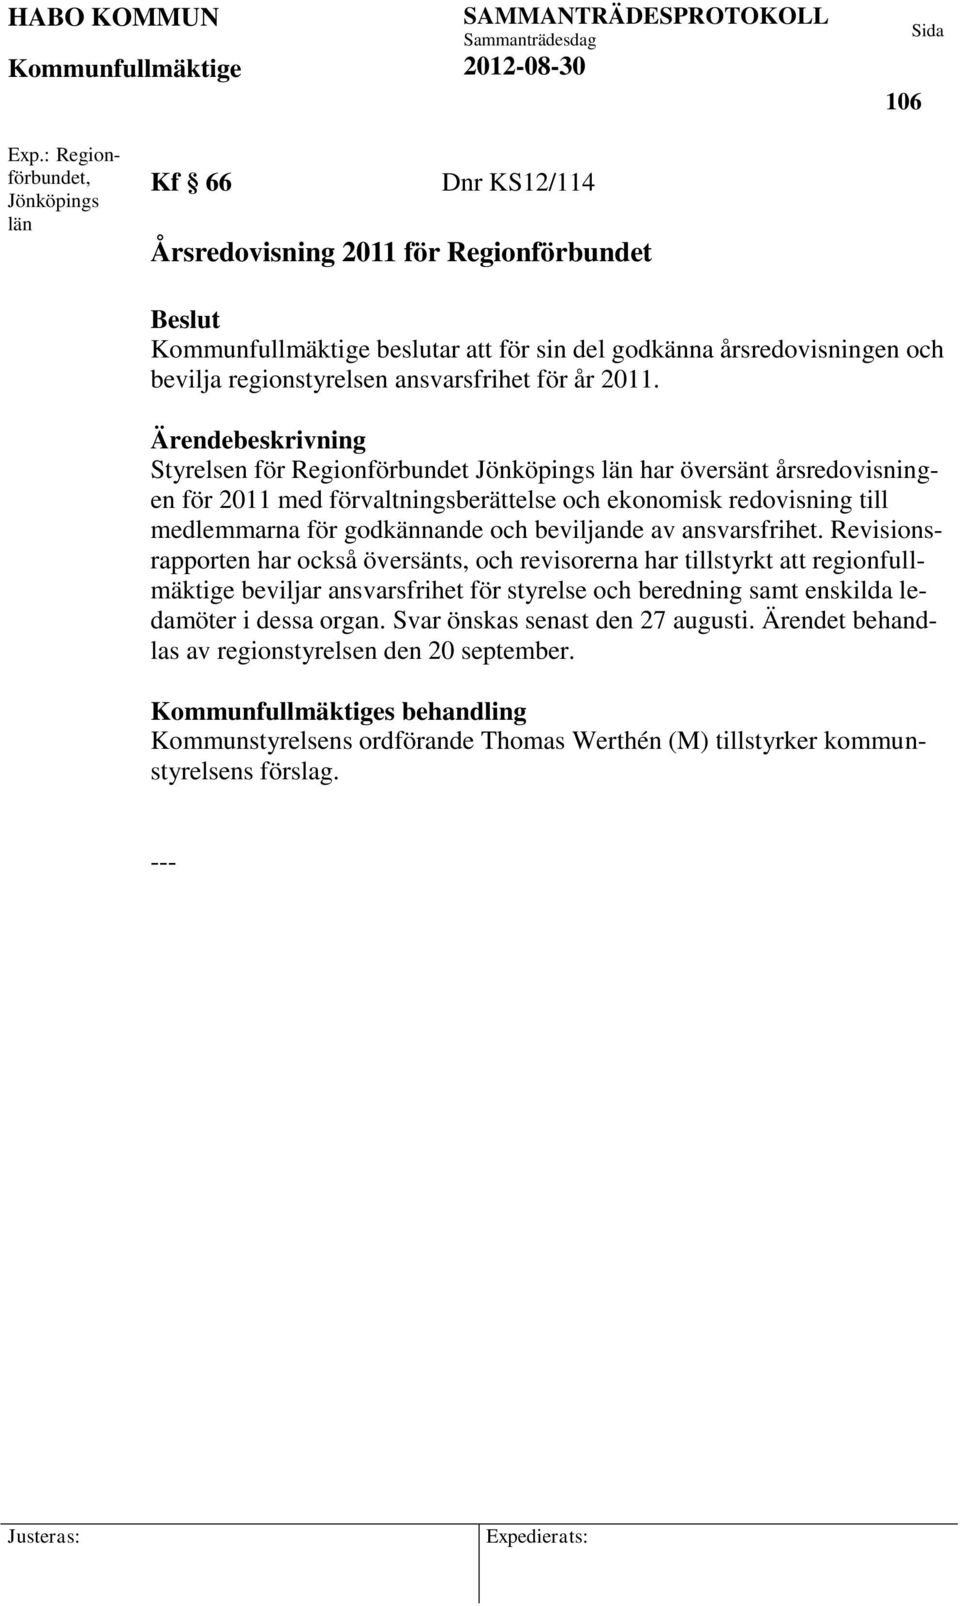 Ärendebeskrivning Styrelsen för Regionförbundet Jönköpings län har översänt årsredovisningen för 2011 med förvaltningsberättelse och ekonomisk redovisning till medlemmarna för godkännande och